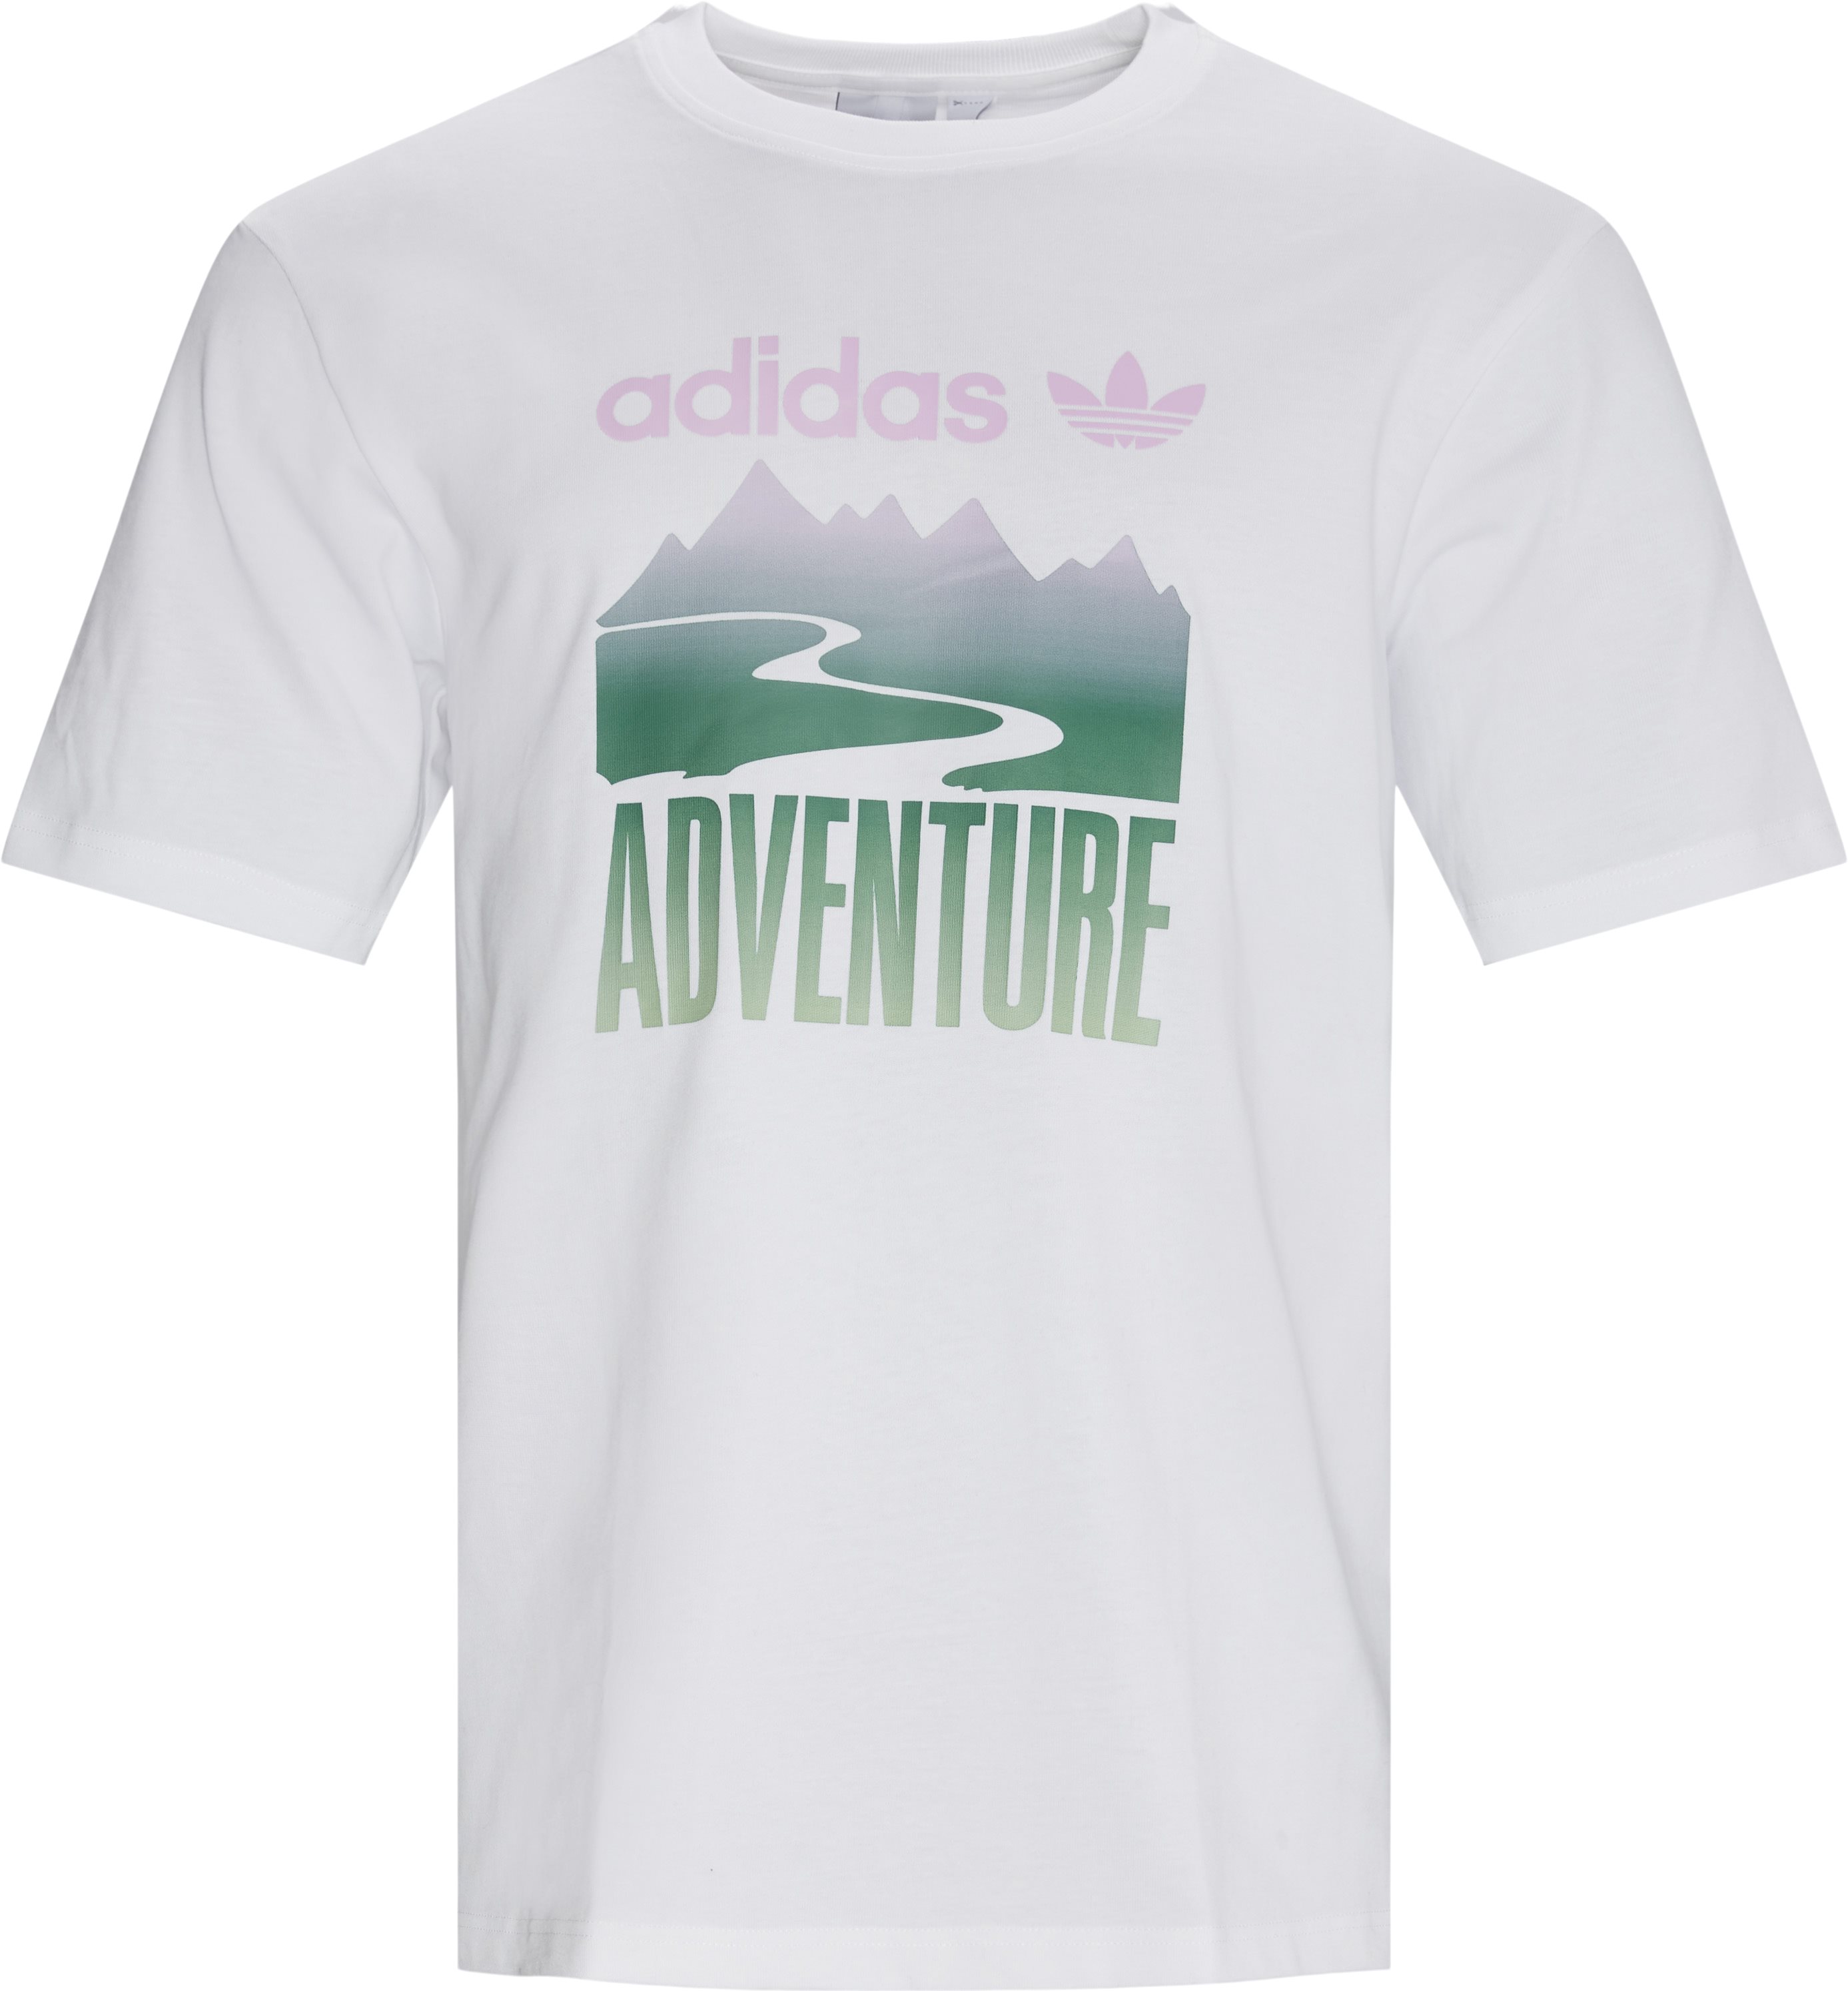 Adv Mount Tee - T-shirts - Regular fit - White